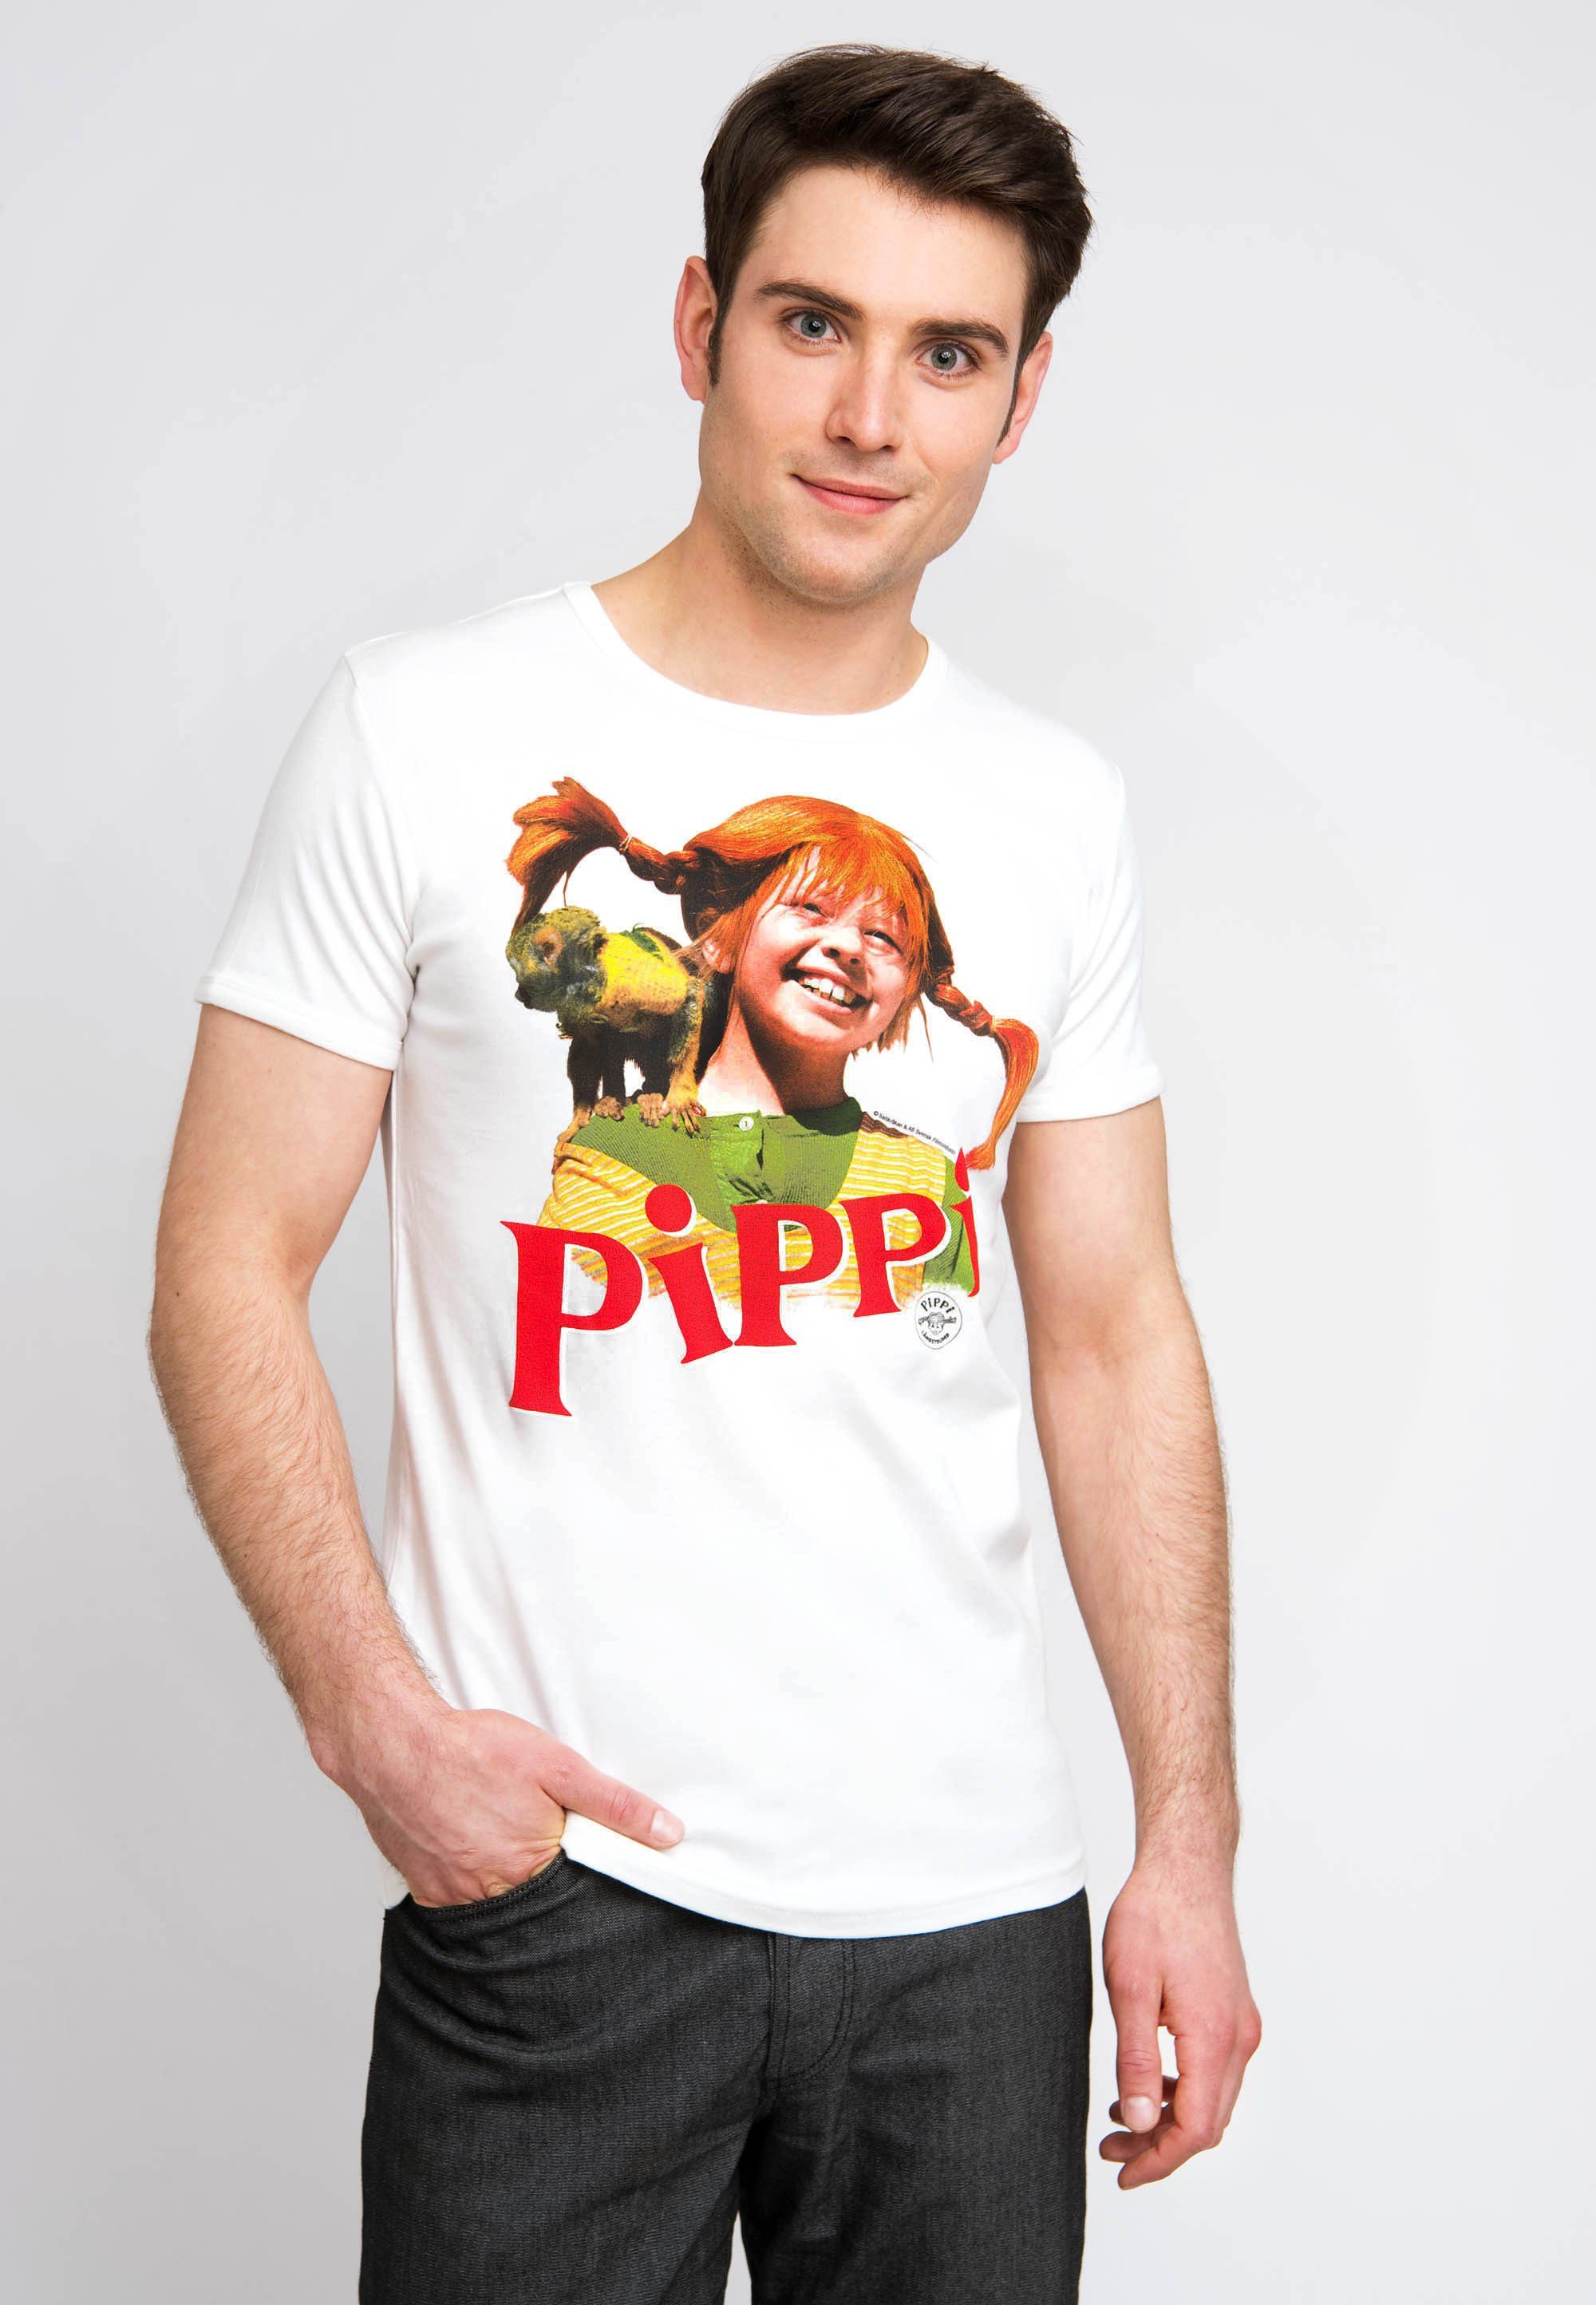 LOGOSHIRT T-Shirt Pippi Langstrumpf mit frechem Frontprint